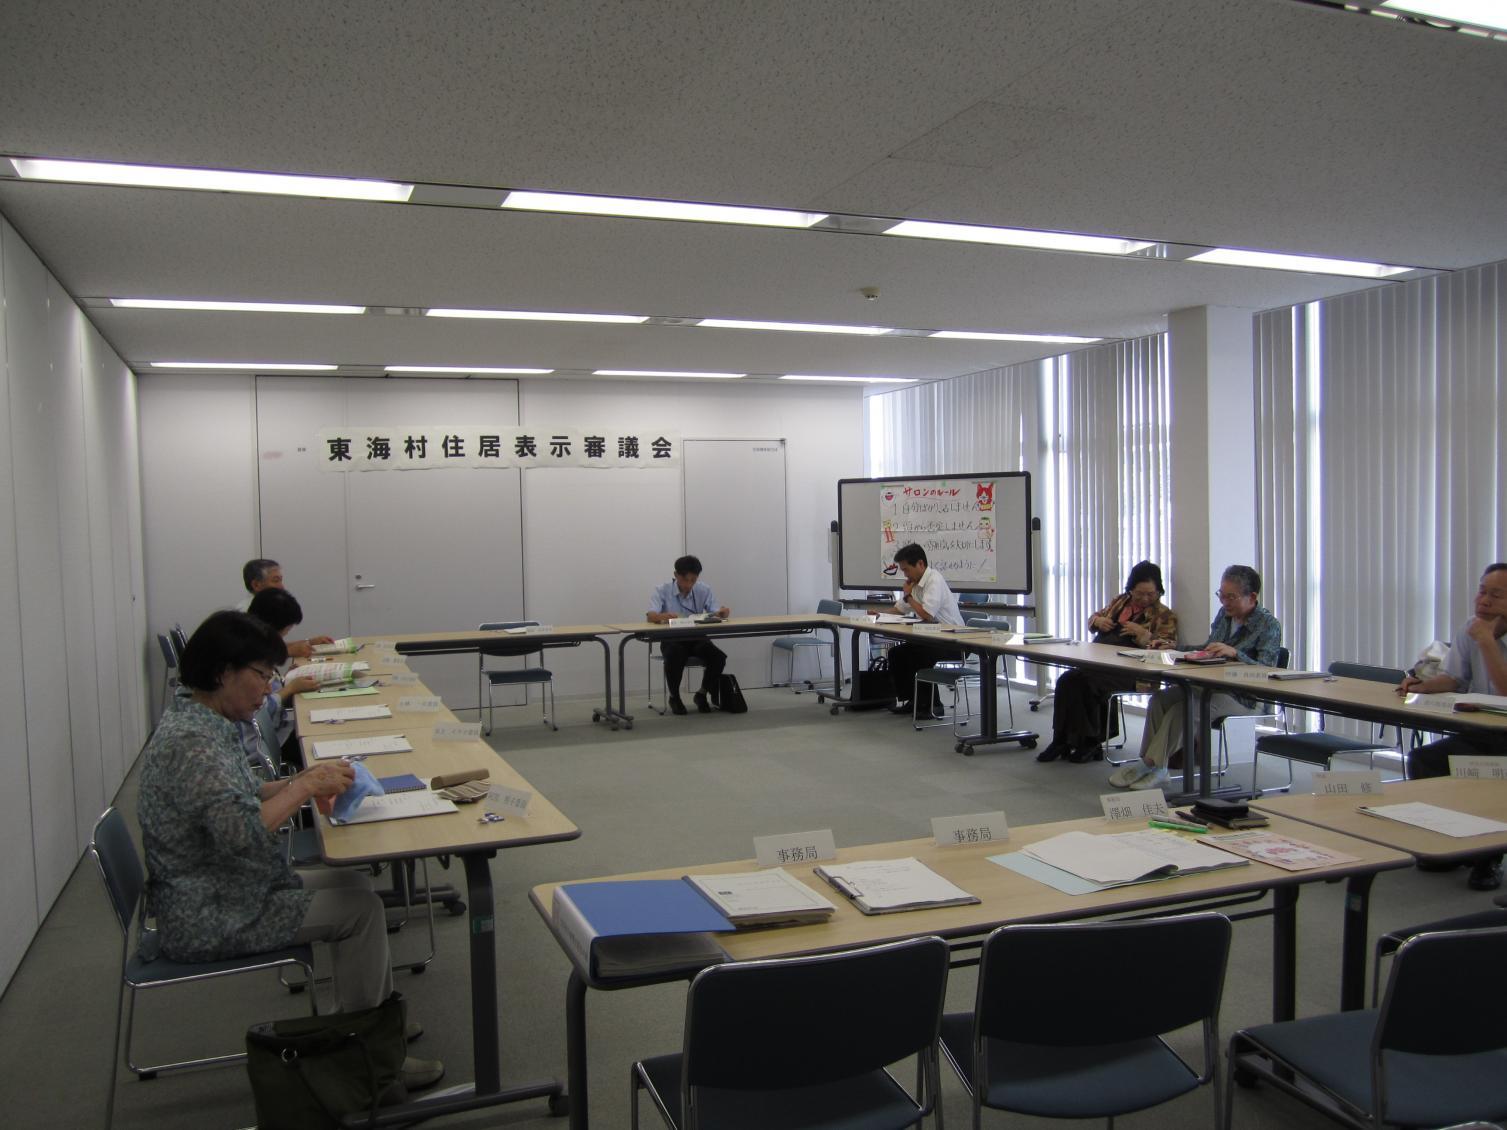 東海村住居表示審議会において、会議室にロの字型に並べられた机に向かって会議を進める参加者、8名ほどが写っている写真